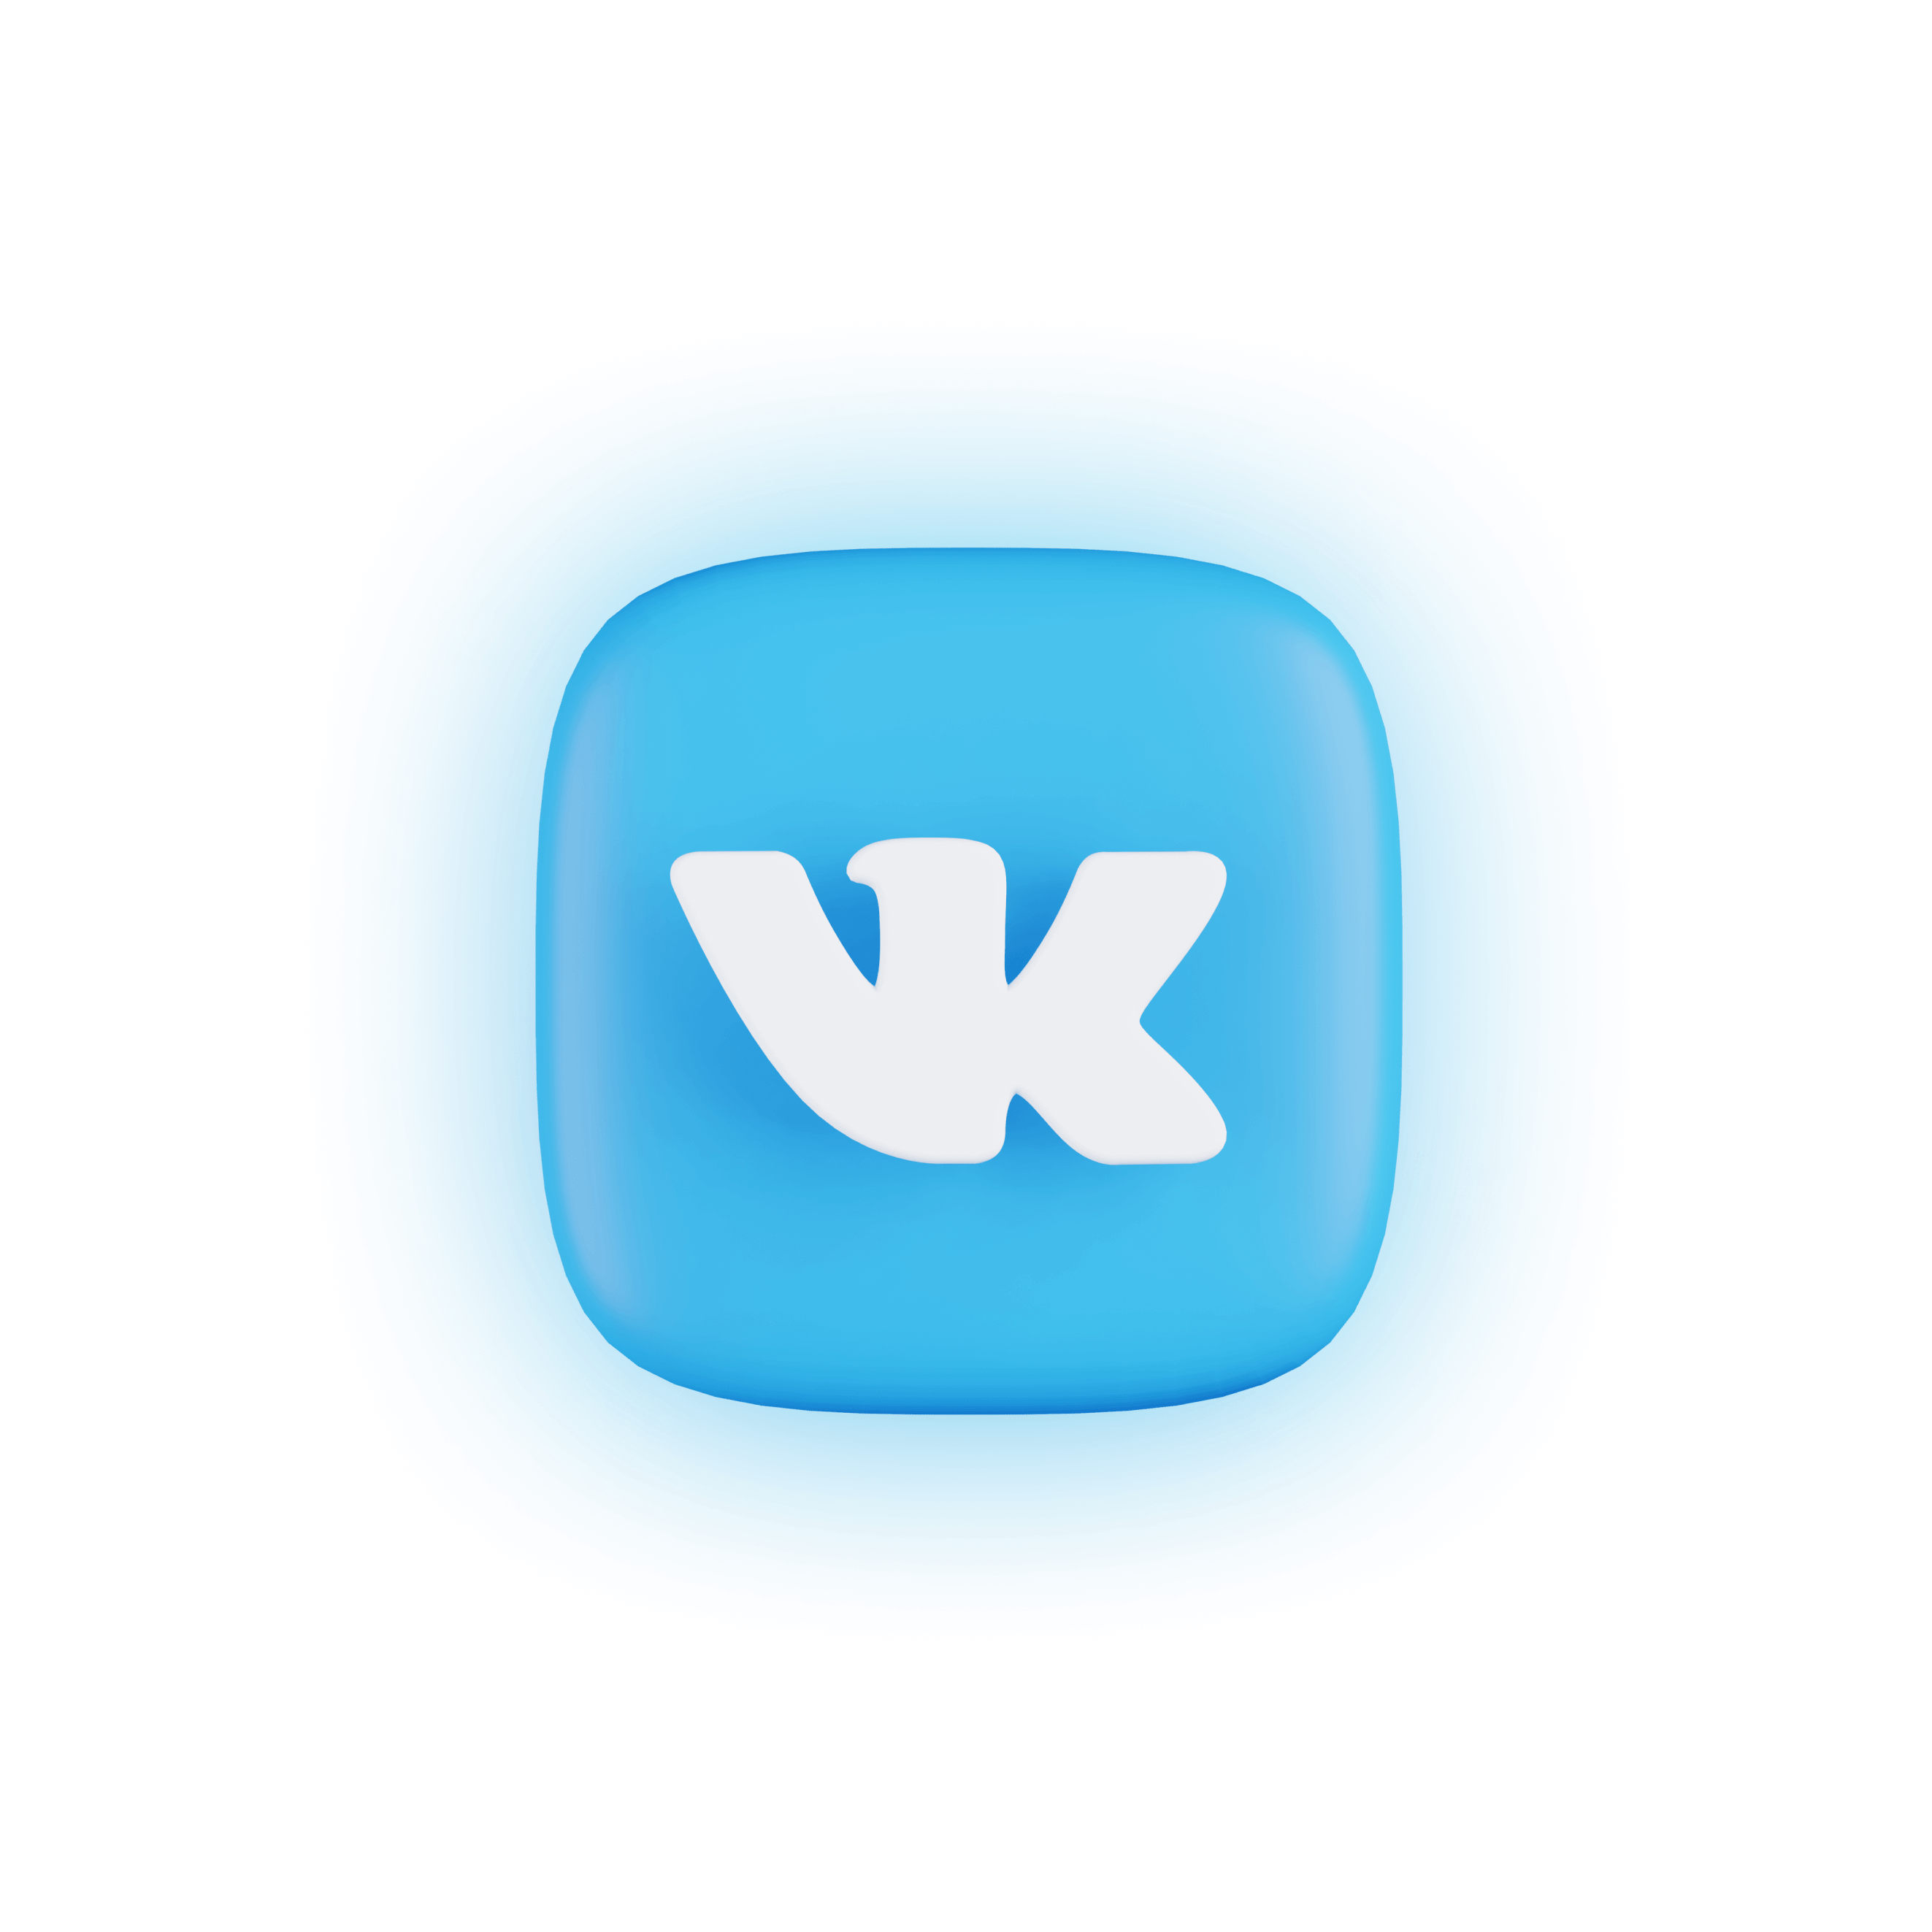 ВК, ВКонтакте, логотип ВК, vk logo